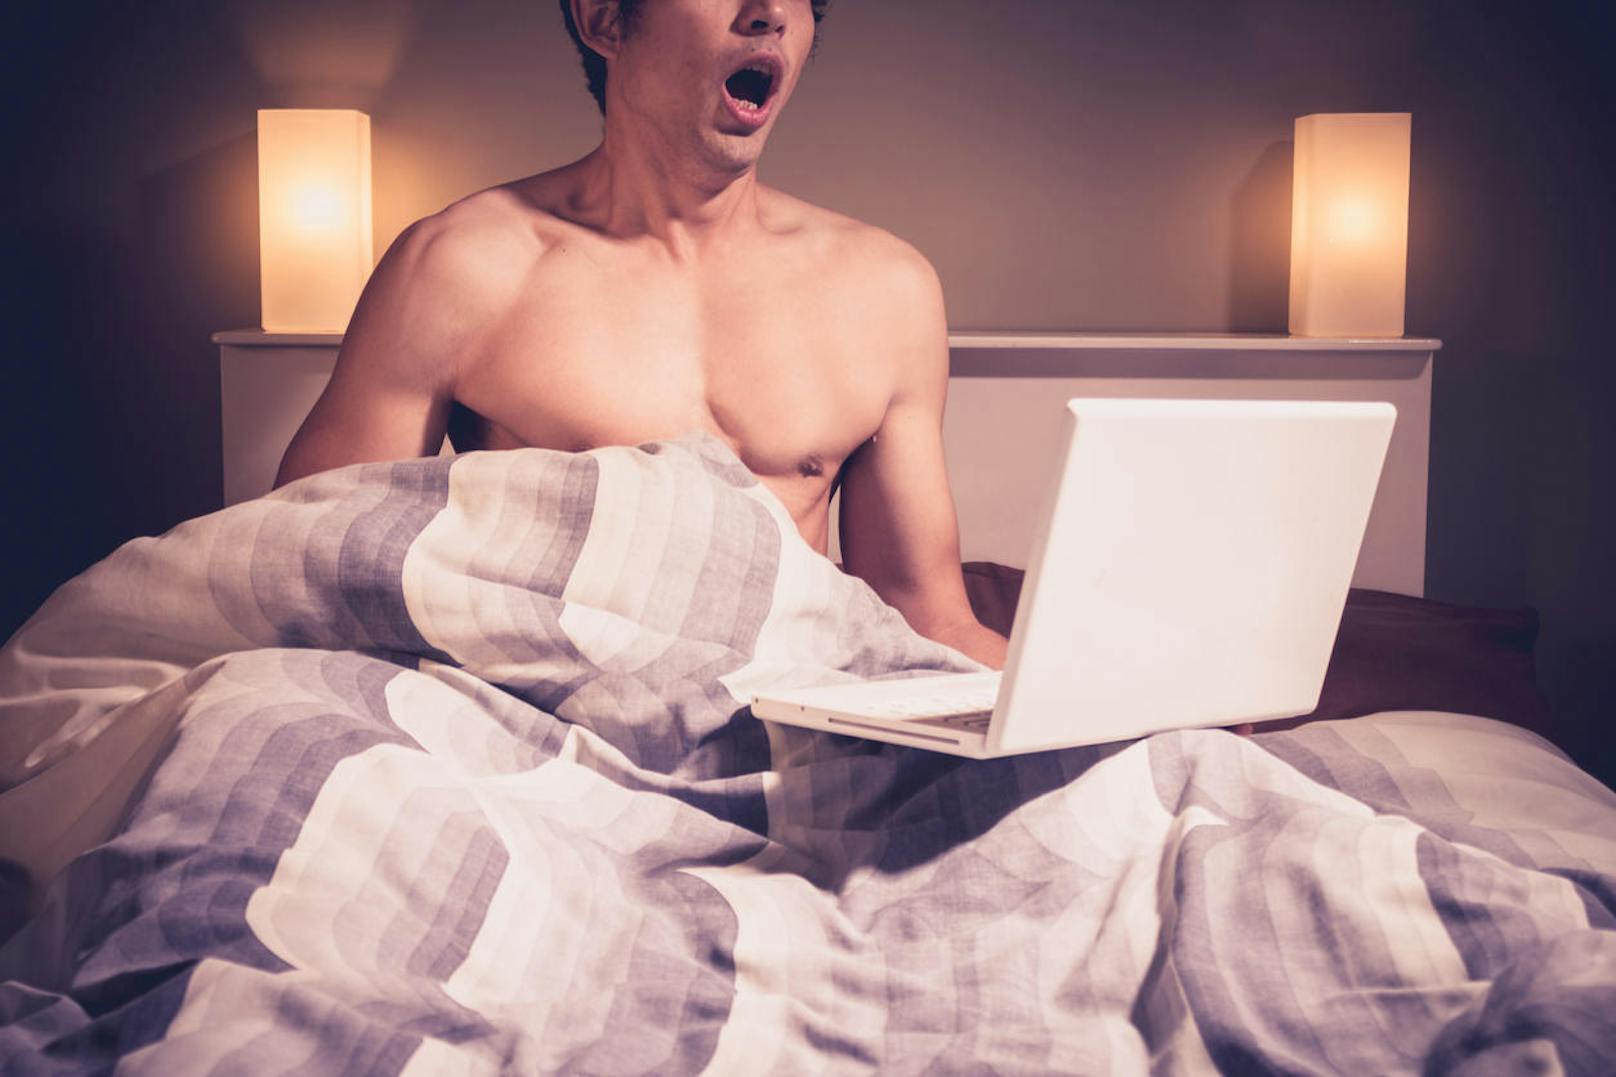 Die nachhaltigste Möglichkeit für Männer, eine durch Pornokonsum hervorgerufene Erektionsstörung zu beheben, liegt darin, sich vorübergehend von der Reizüberflutung durch Pornos abzuwenden.